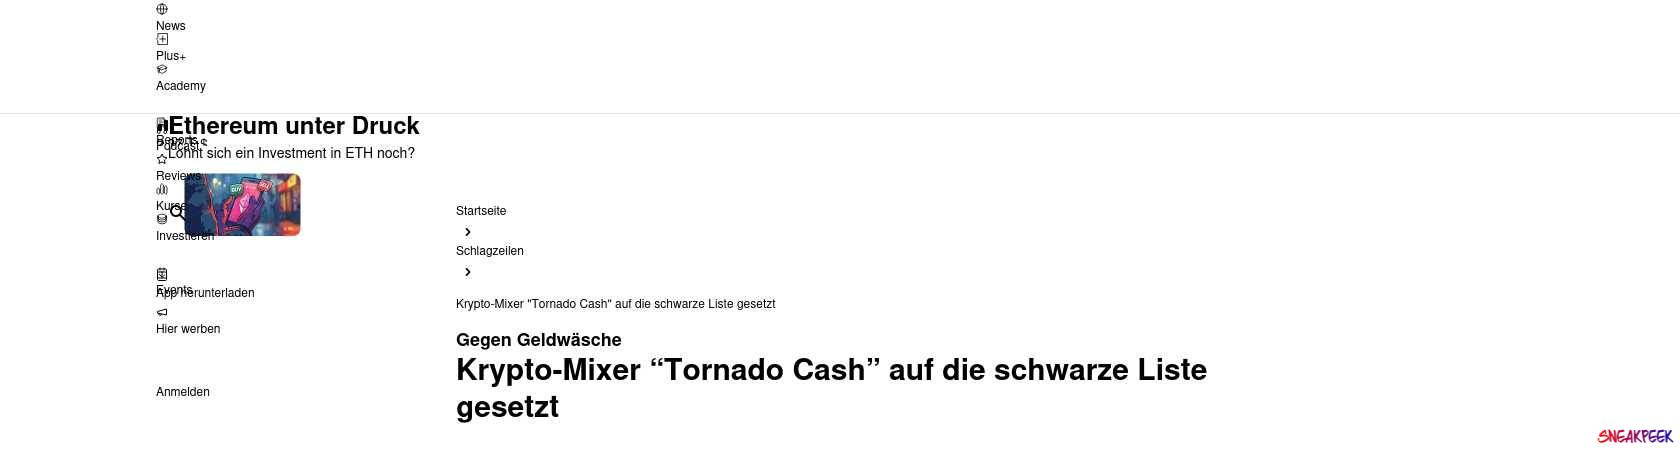 Read the full Article:  ⭲ Krypto-Mixer "Tornado Cash" auf die schwarze Liste gesetzt